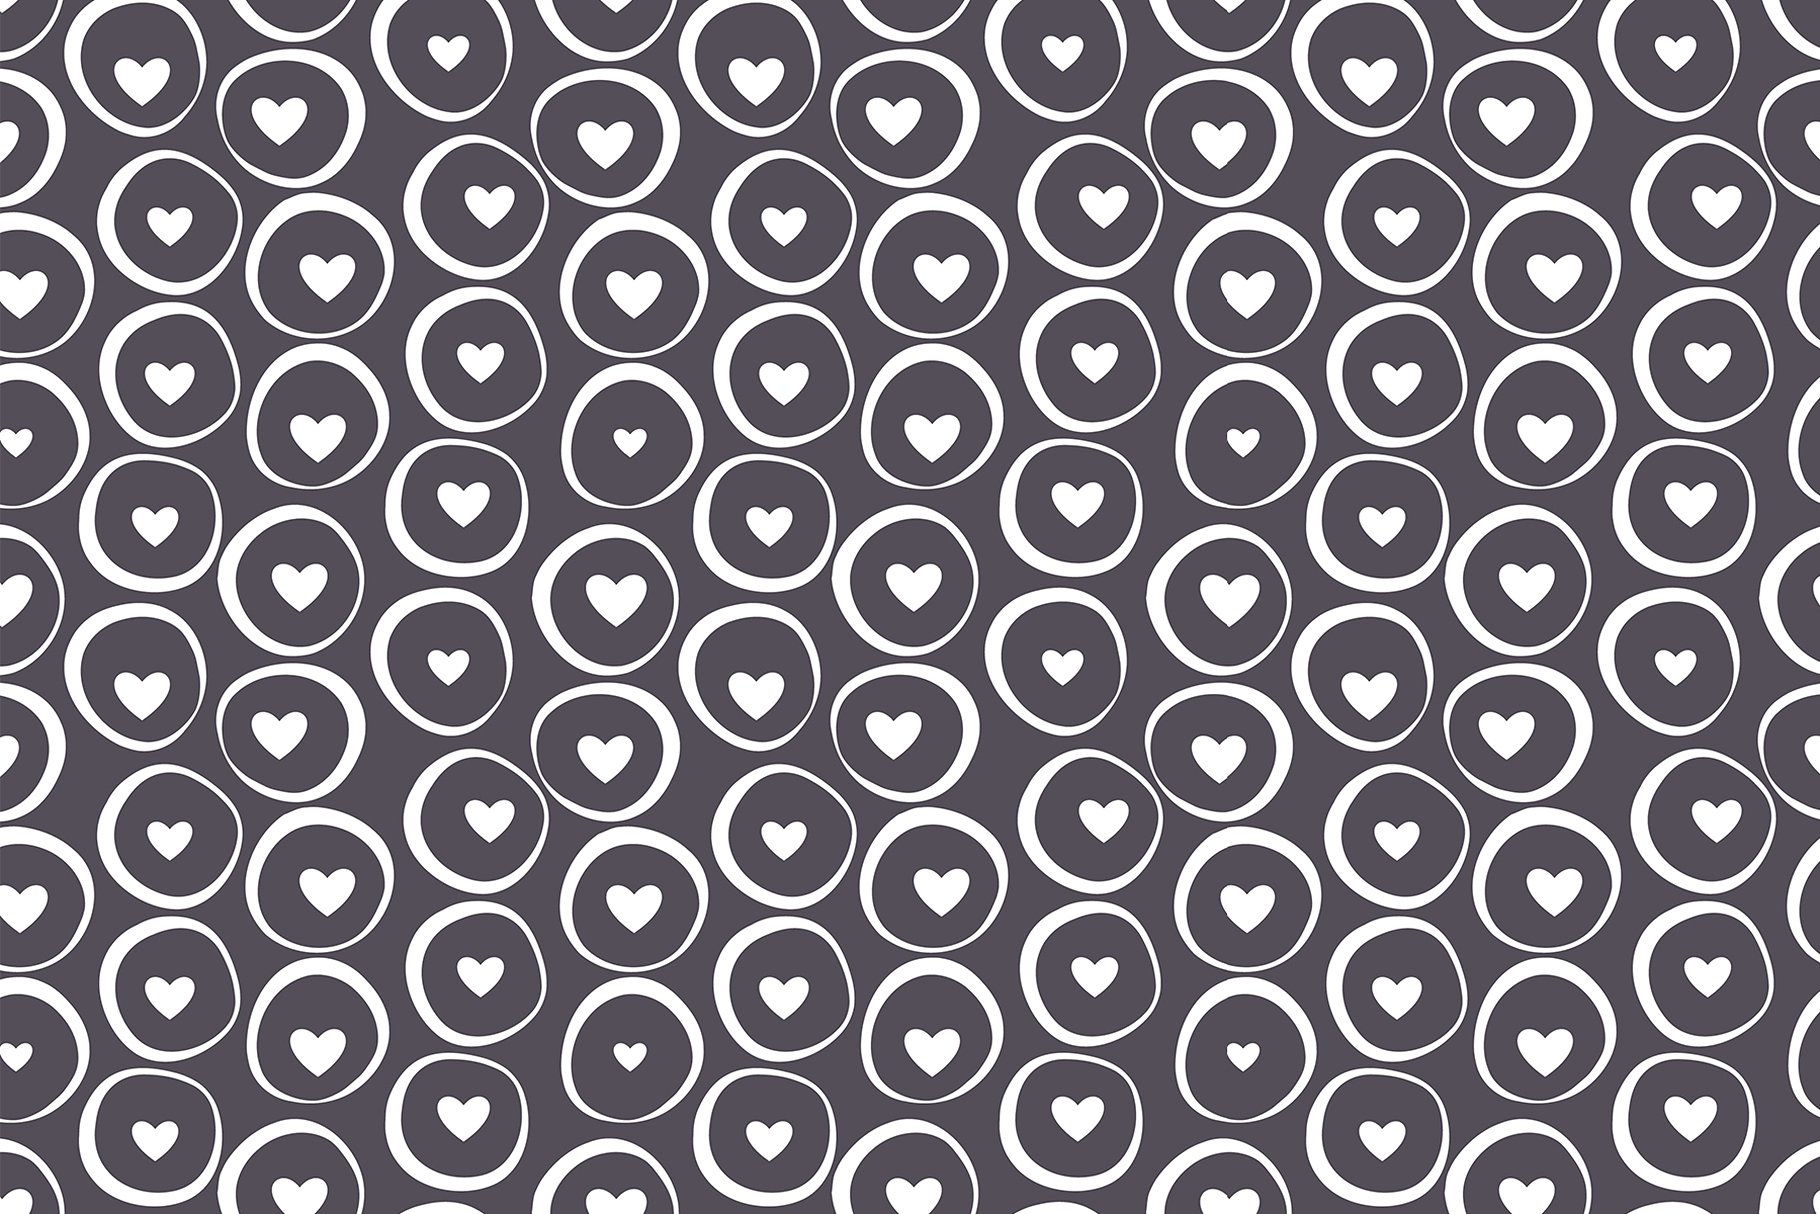 心形无缝纹理集 Hearts Seamless Patterns Set插图(3)